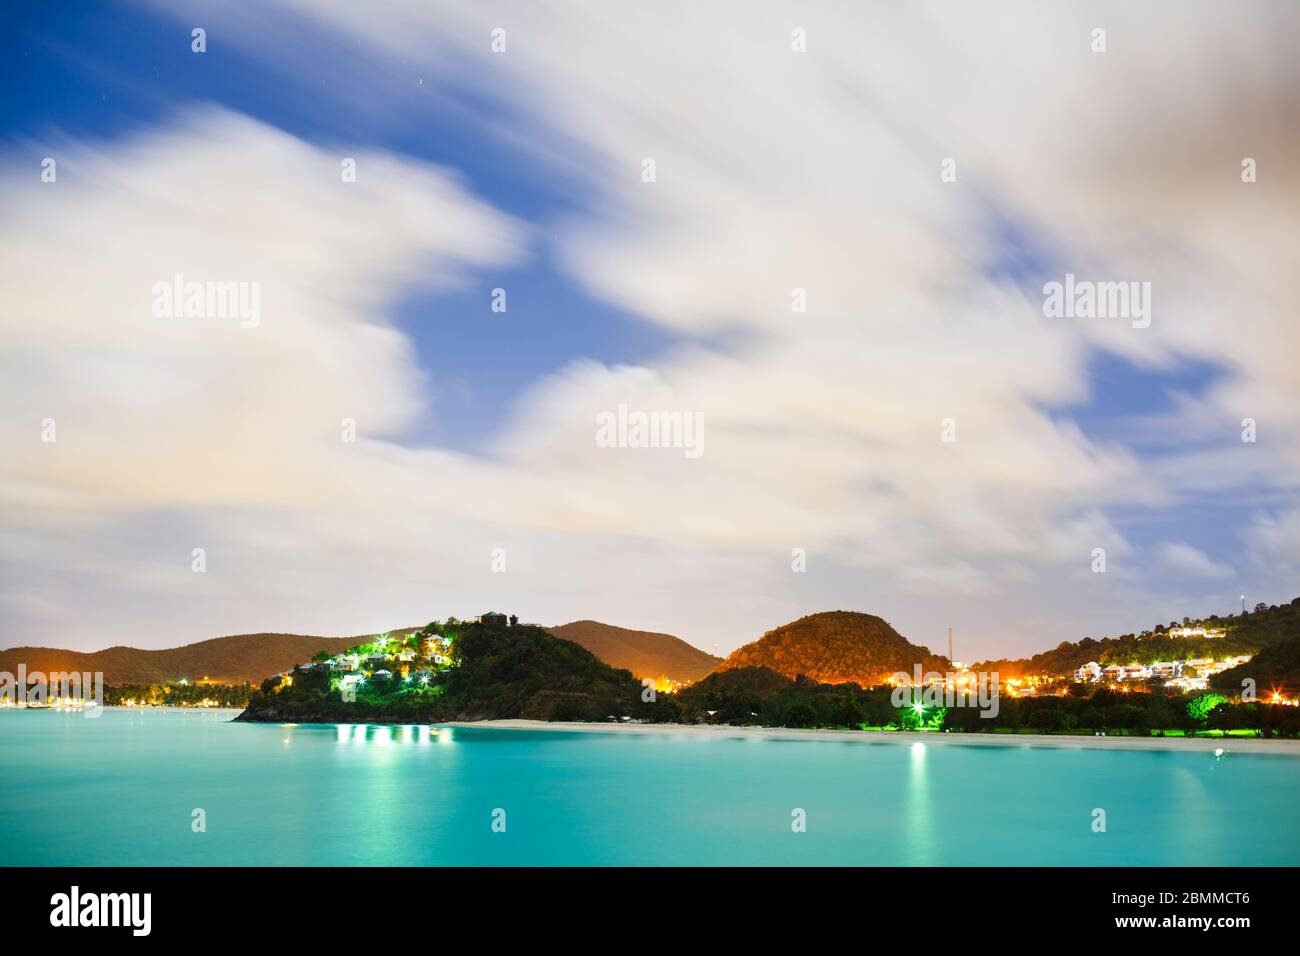 Nachtaufnahme eines karibischen Strandes in Antigua, der Vollmond beleuchtet das türkisfarbene Wasser. Stockfoto